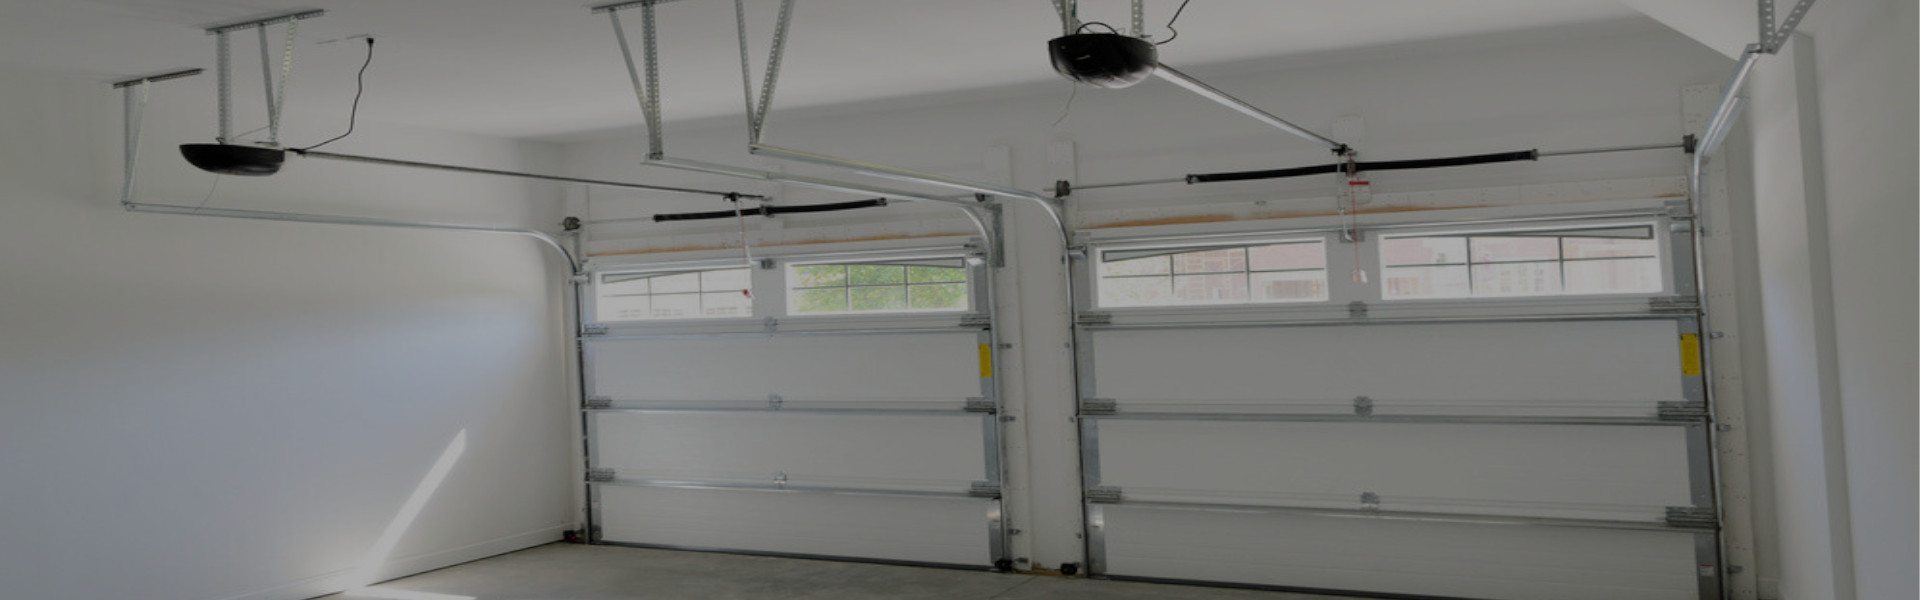 Slider Garage Door Repair, Glaziers in Strawberry Hill, Whitton, TW2